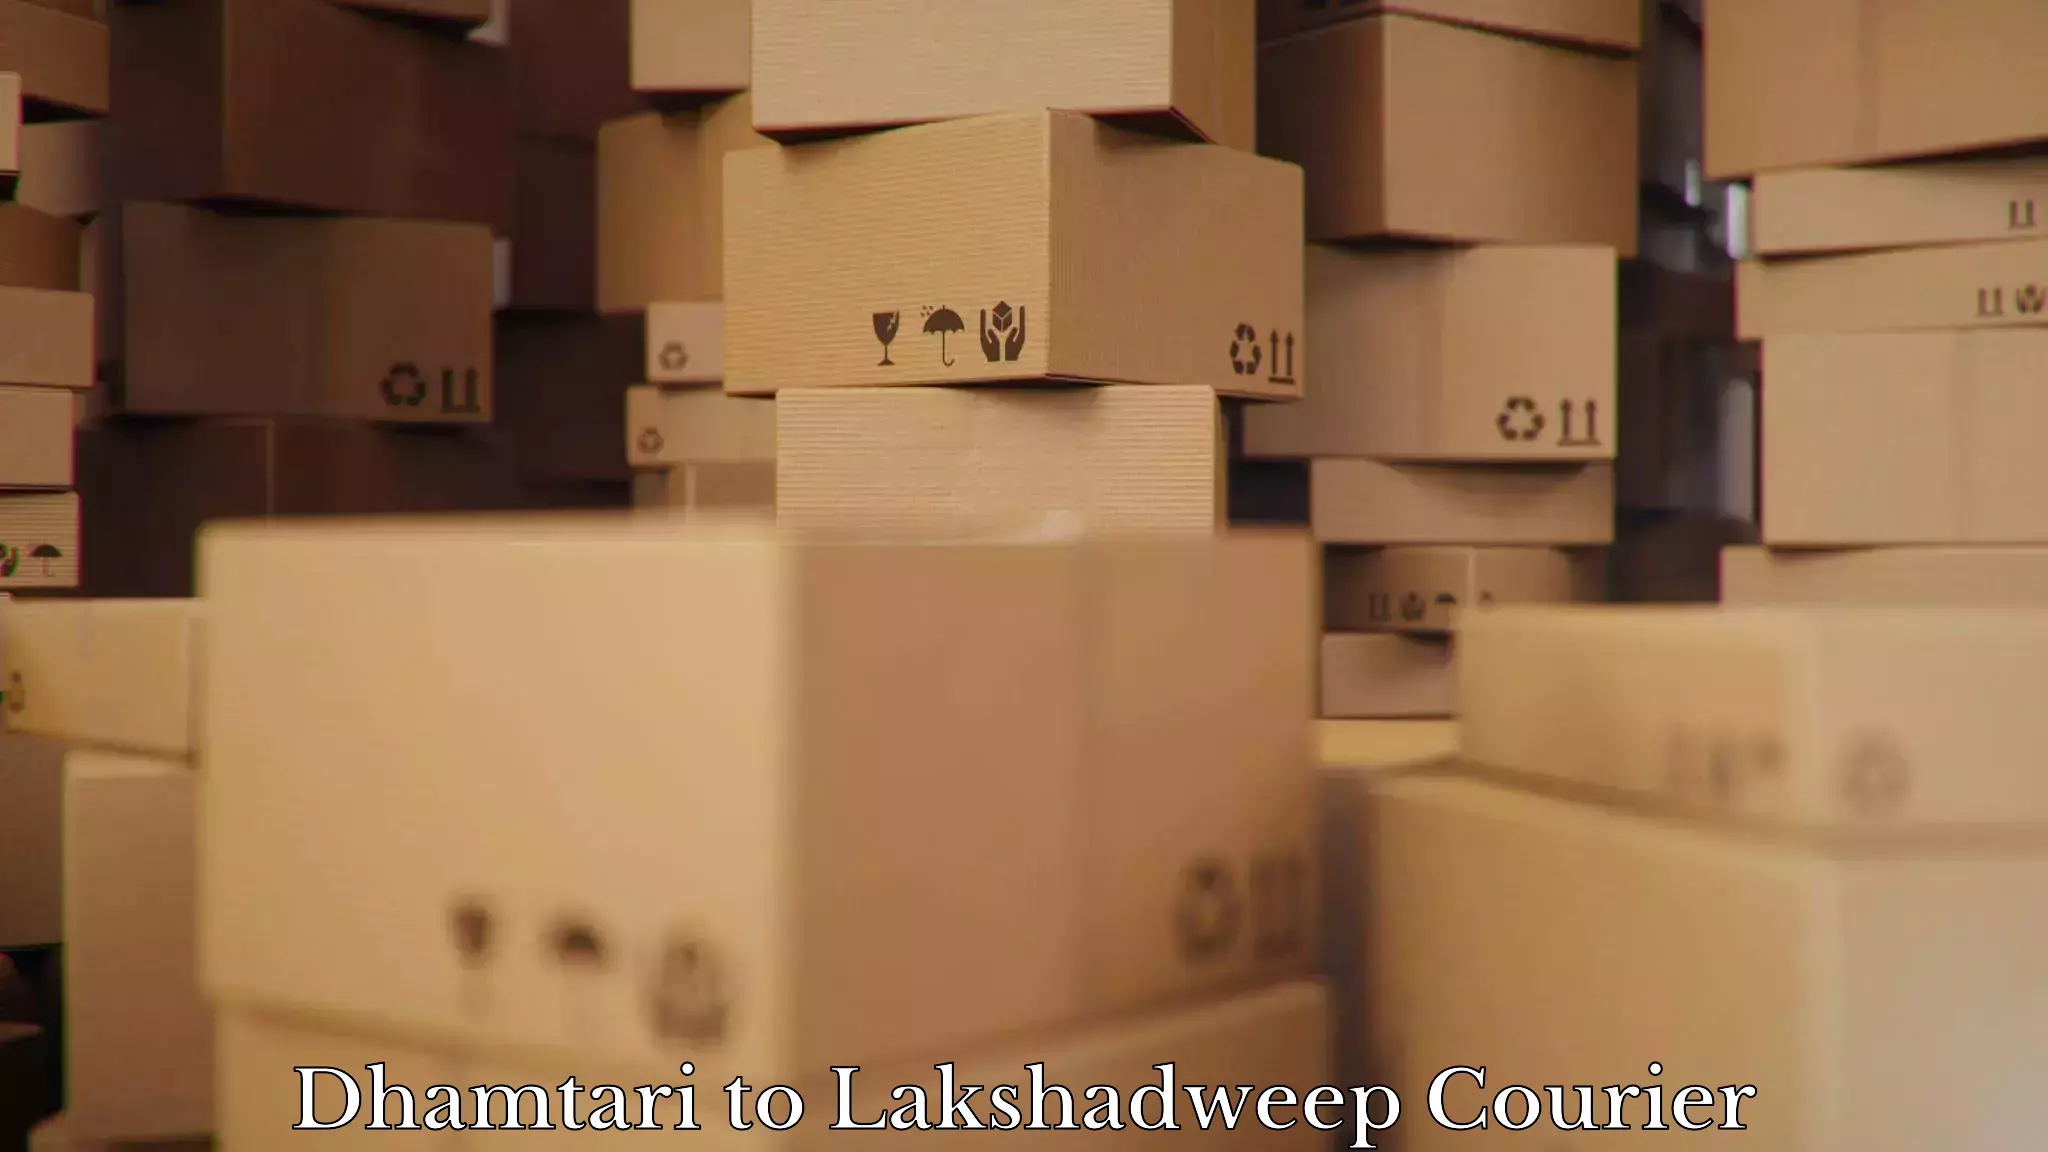 Efficient moving company Dhamtari to Lakshadweep